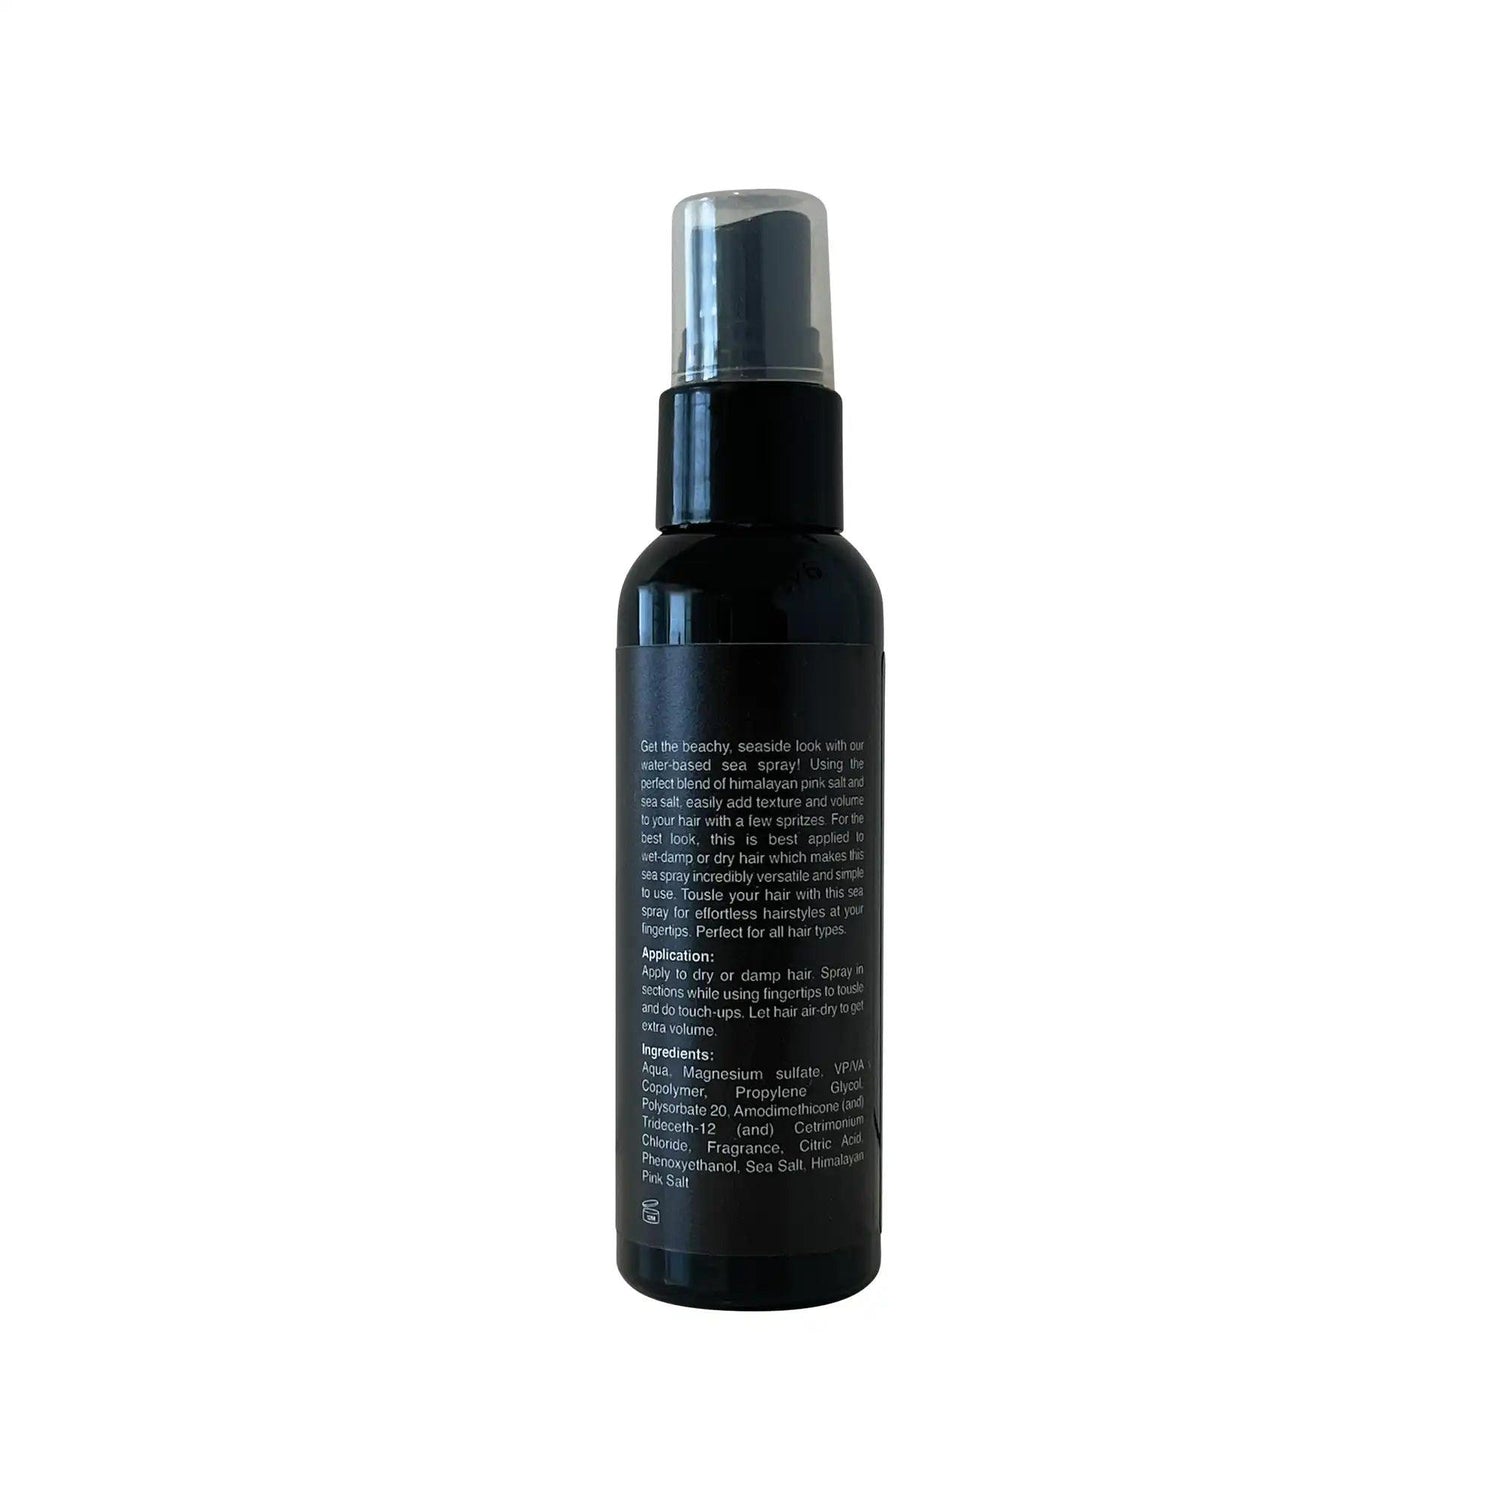 Sea Spray - Lunox Cosmetics